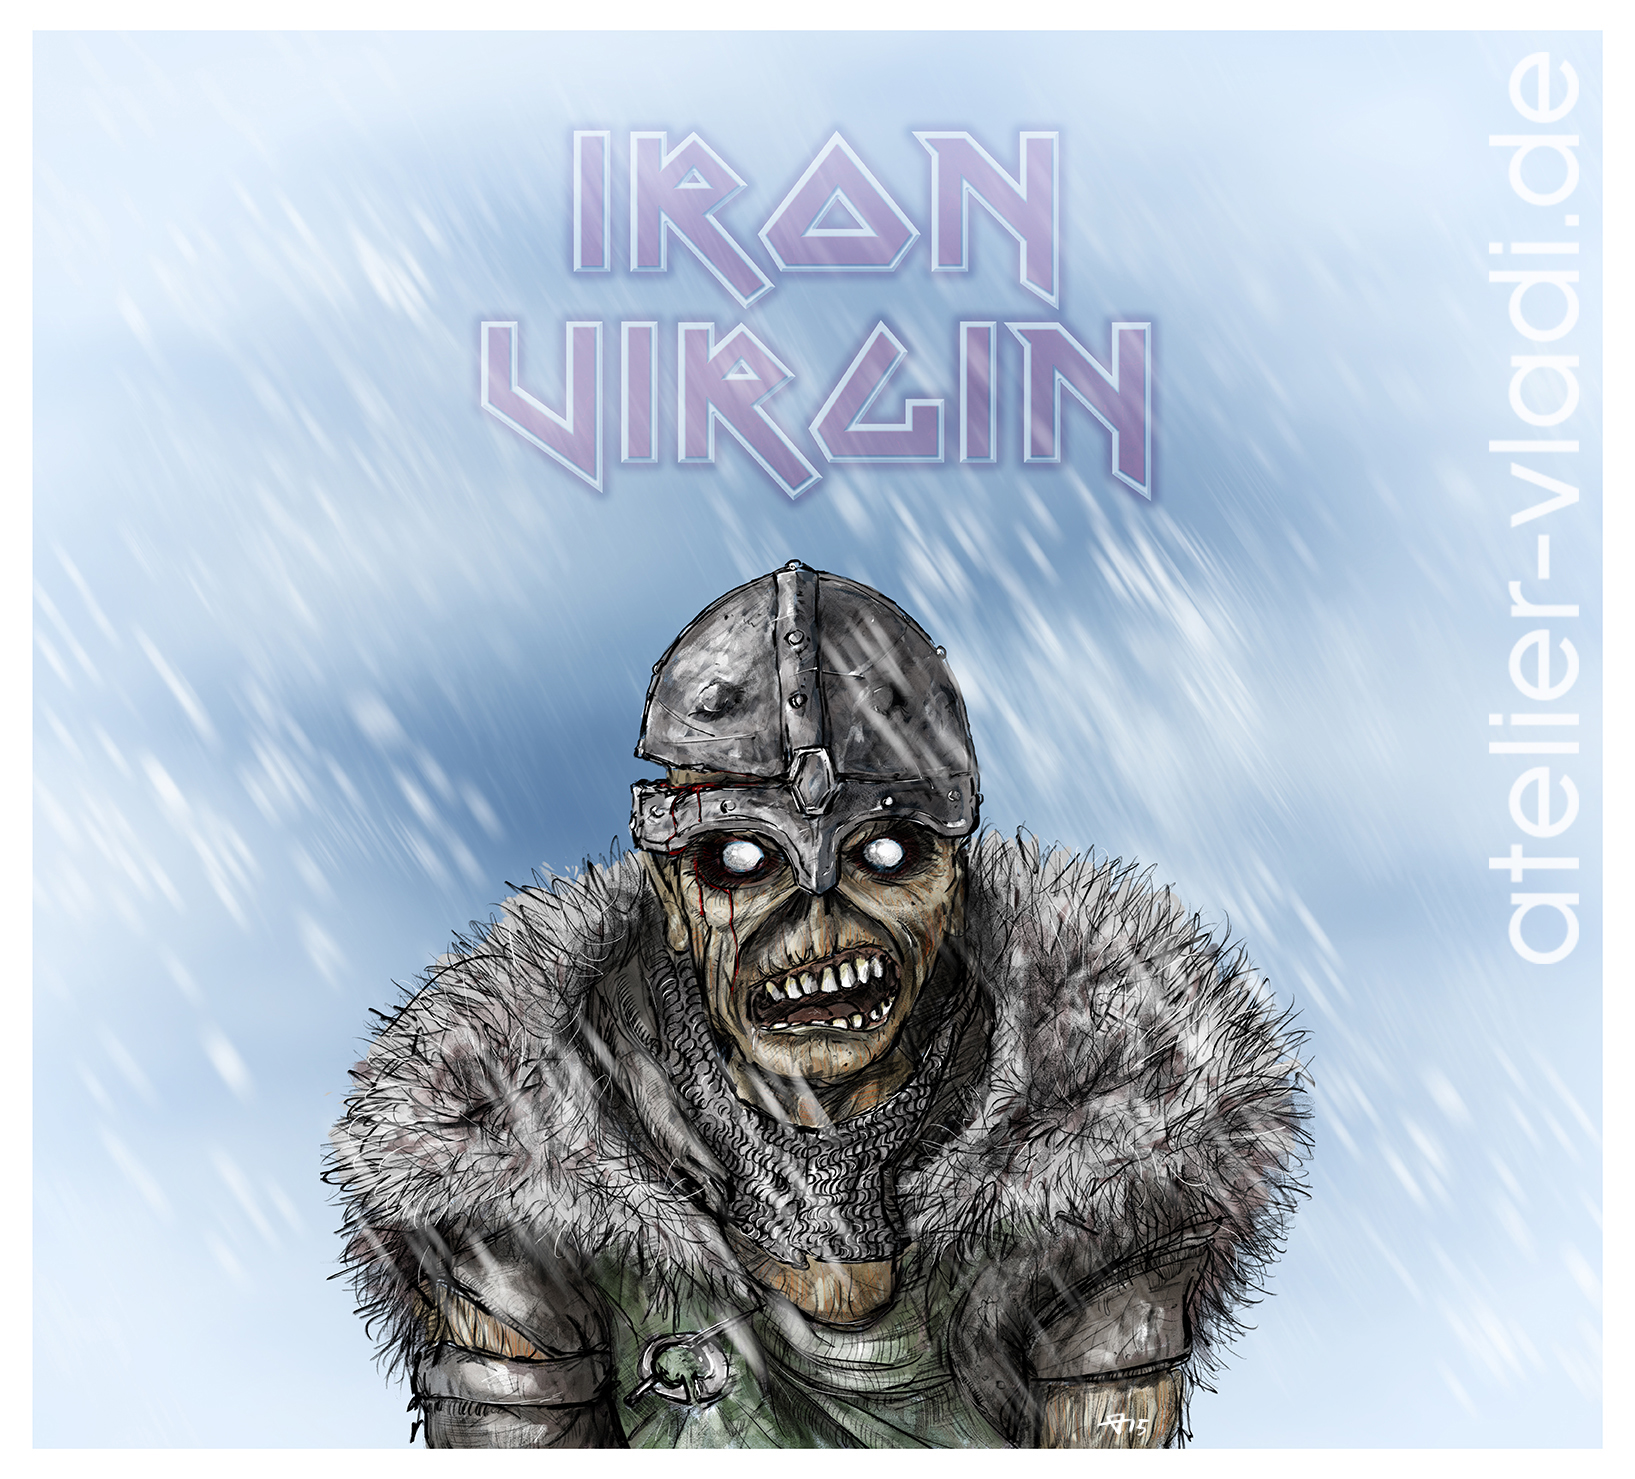 Band Iron Maiden Iron Virgin